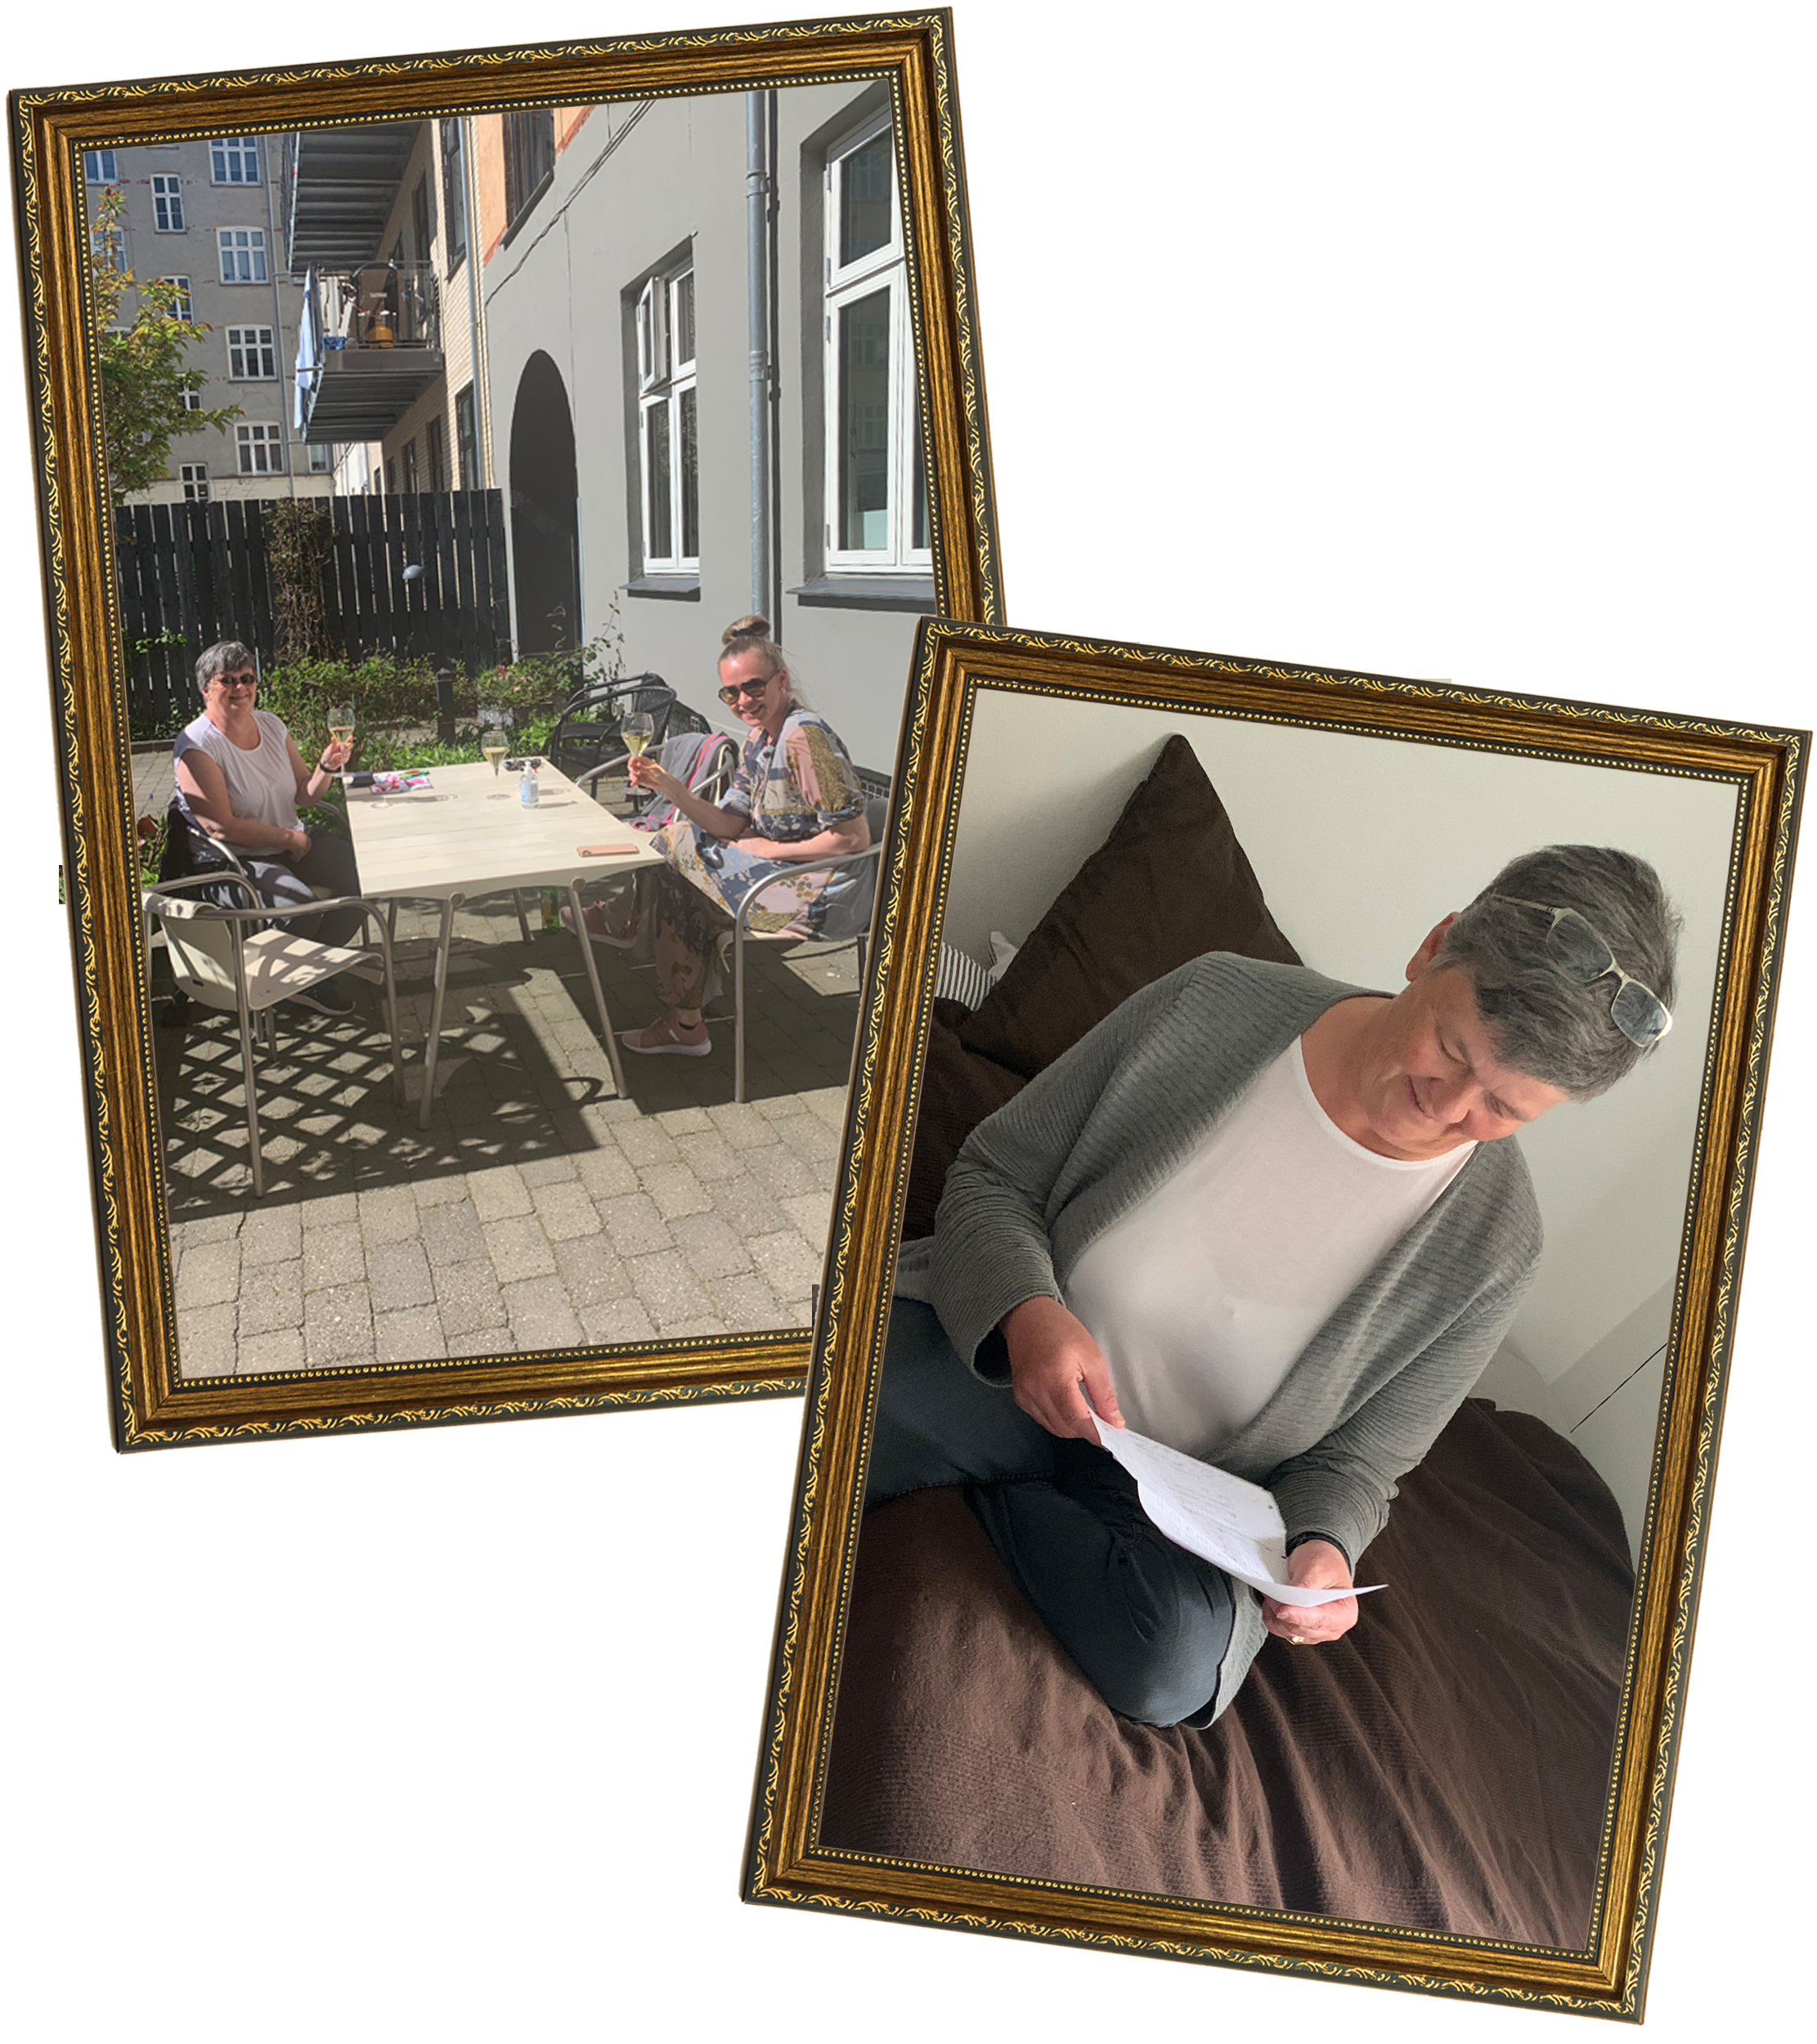 Ulla drikker hvidvin med et familiemedlem og Ulla læser brev